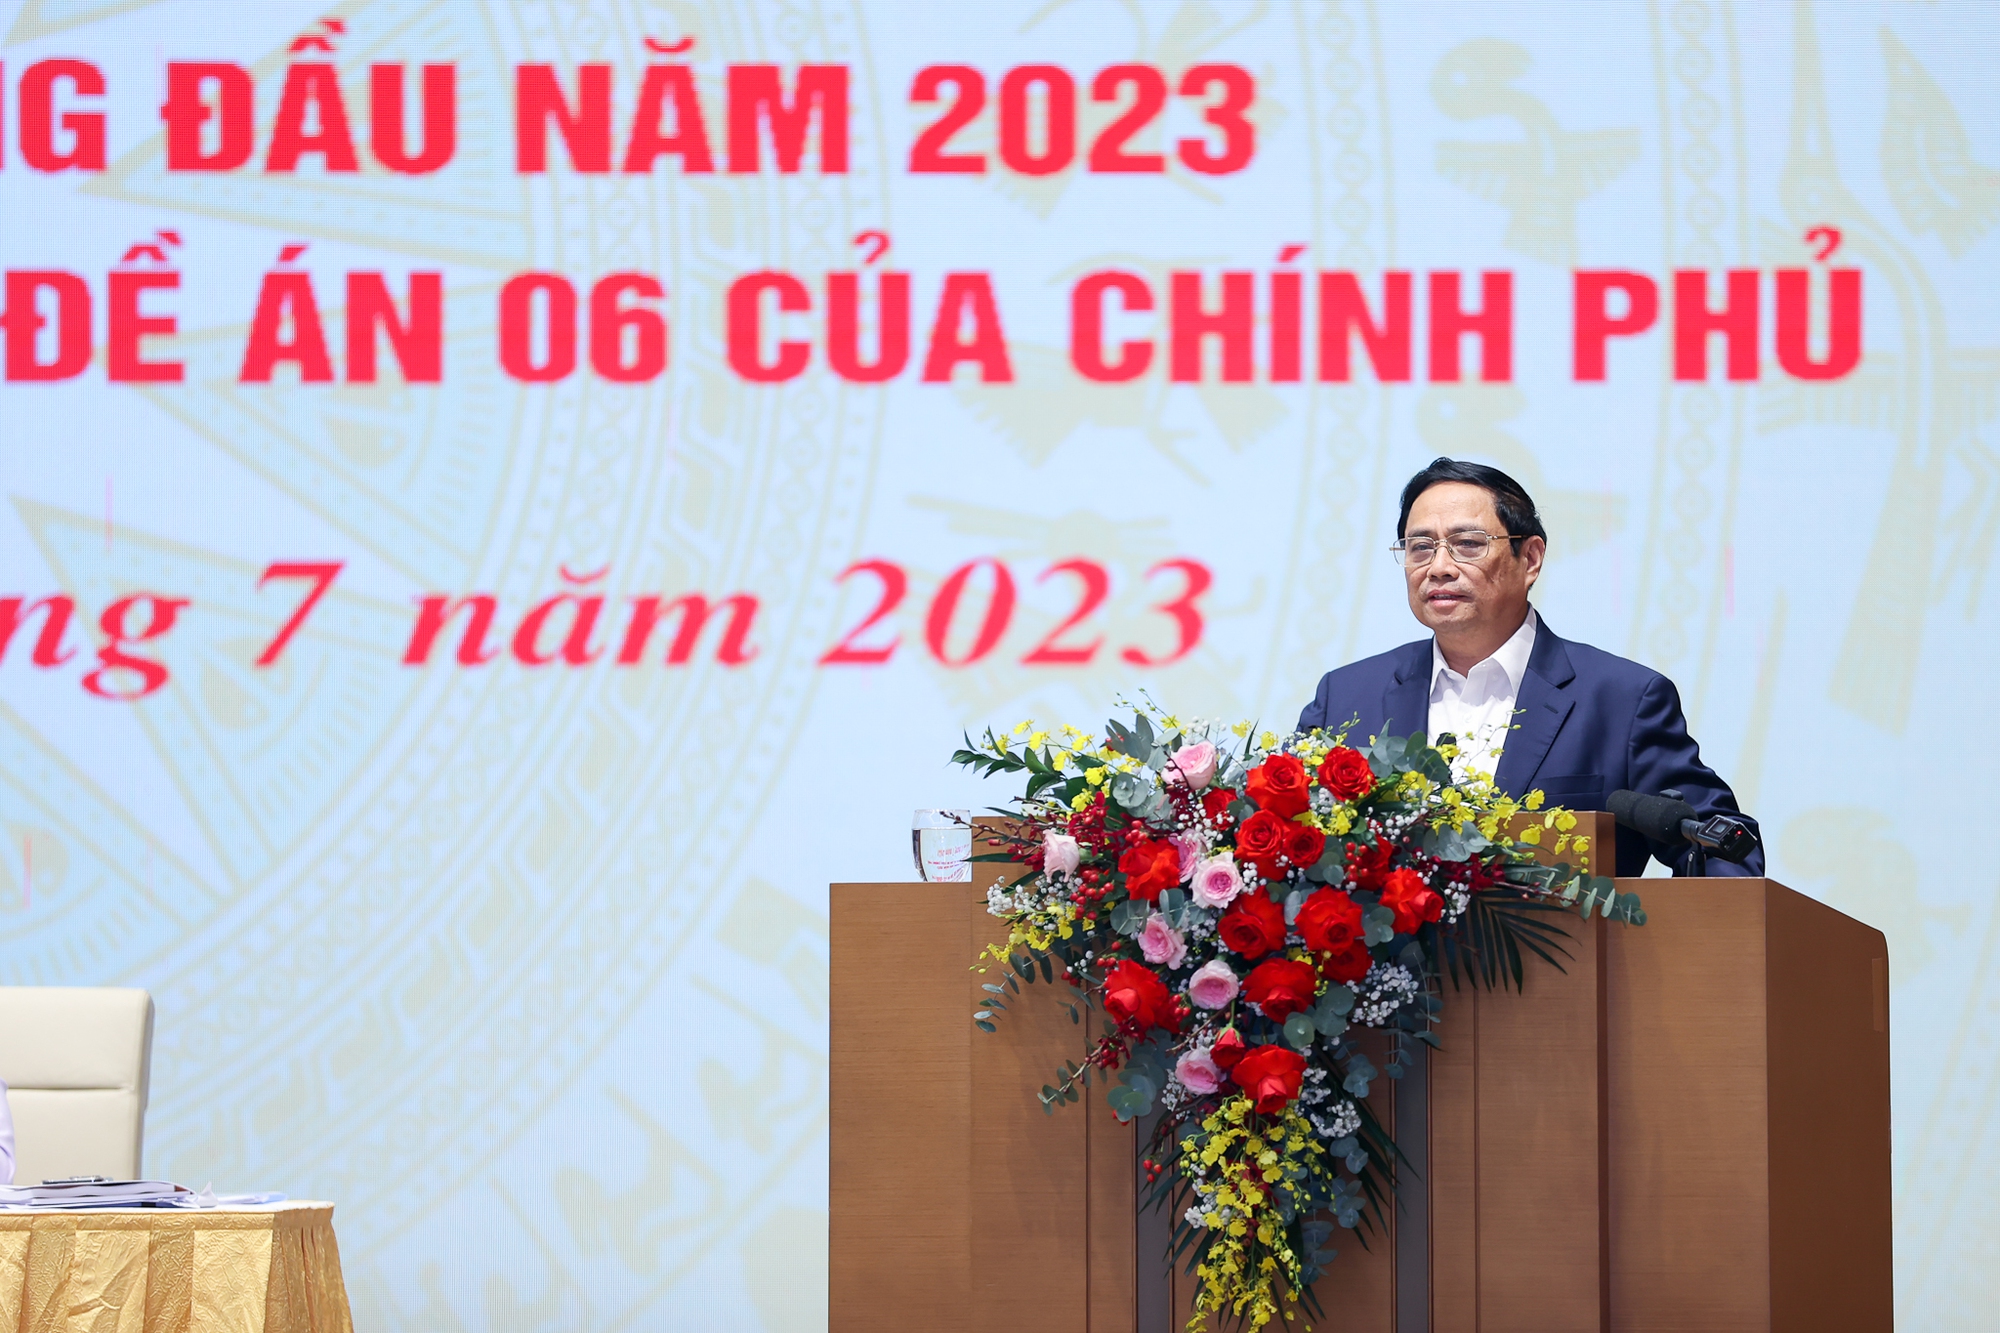 Thủ tướng Phạm Minh Chính phát biểu tại Hội nghị trực tuyến toàn quốc sơ kết 6 tháng đầu năm 2023 về chuyển đổi số quốc gia và Đề án phát triển dữ liệu dân cư, định danh và xác thực điện tử phục vụ chuyển đổi số quốc gia giai đoạn 2022-2025, tầm nhìn đến năm 2030 (Đề án 06)